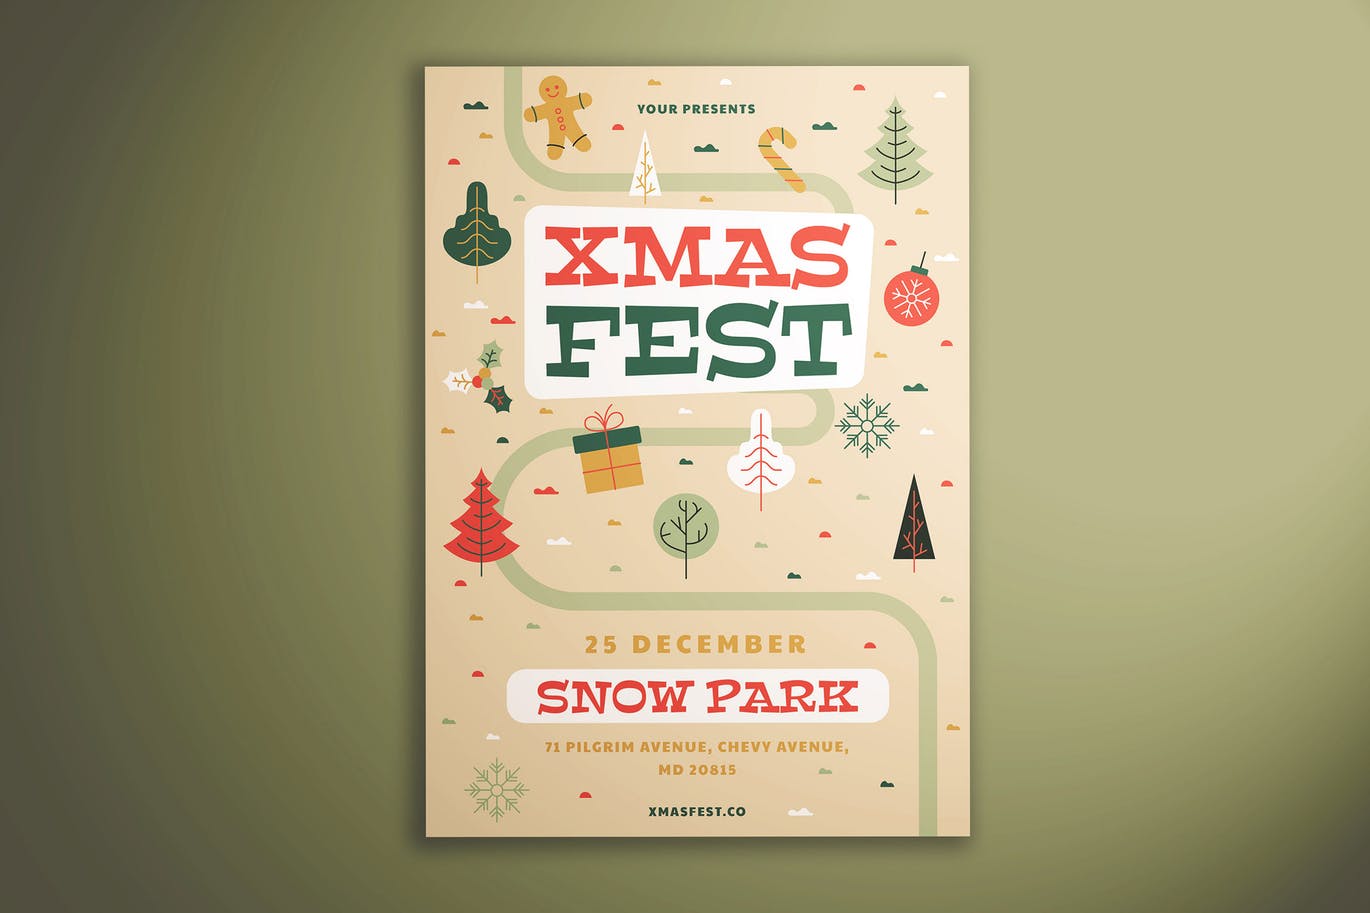 可爱设计风格圣诞节主题活动传单模板 Xmas Fest Flyer插图